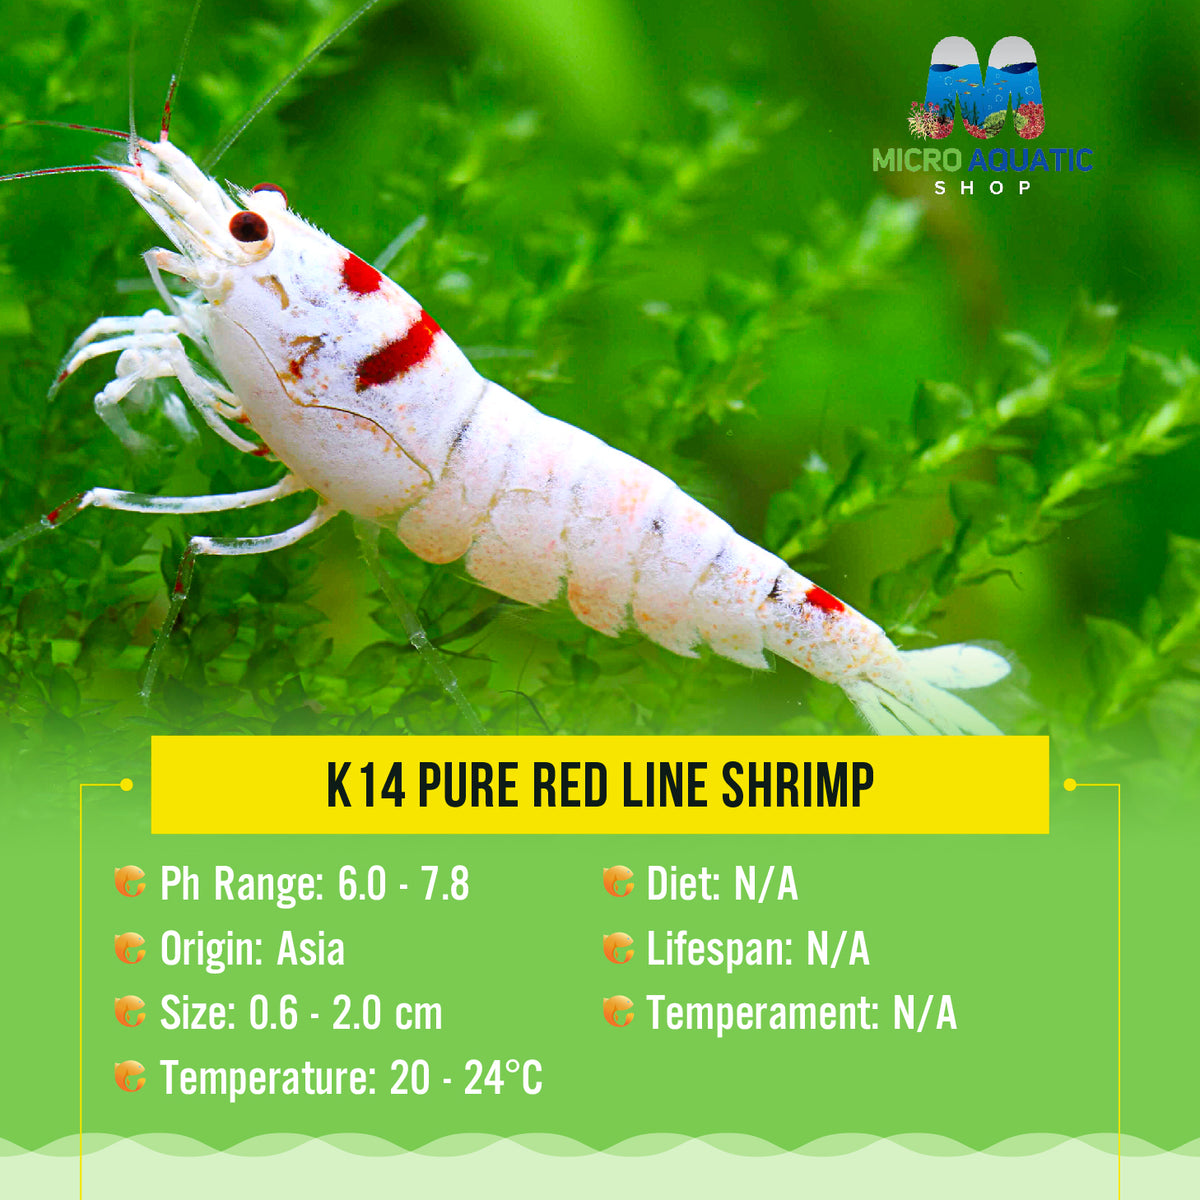 K14 Pure Red Line Shrimp